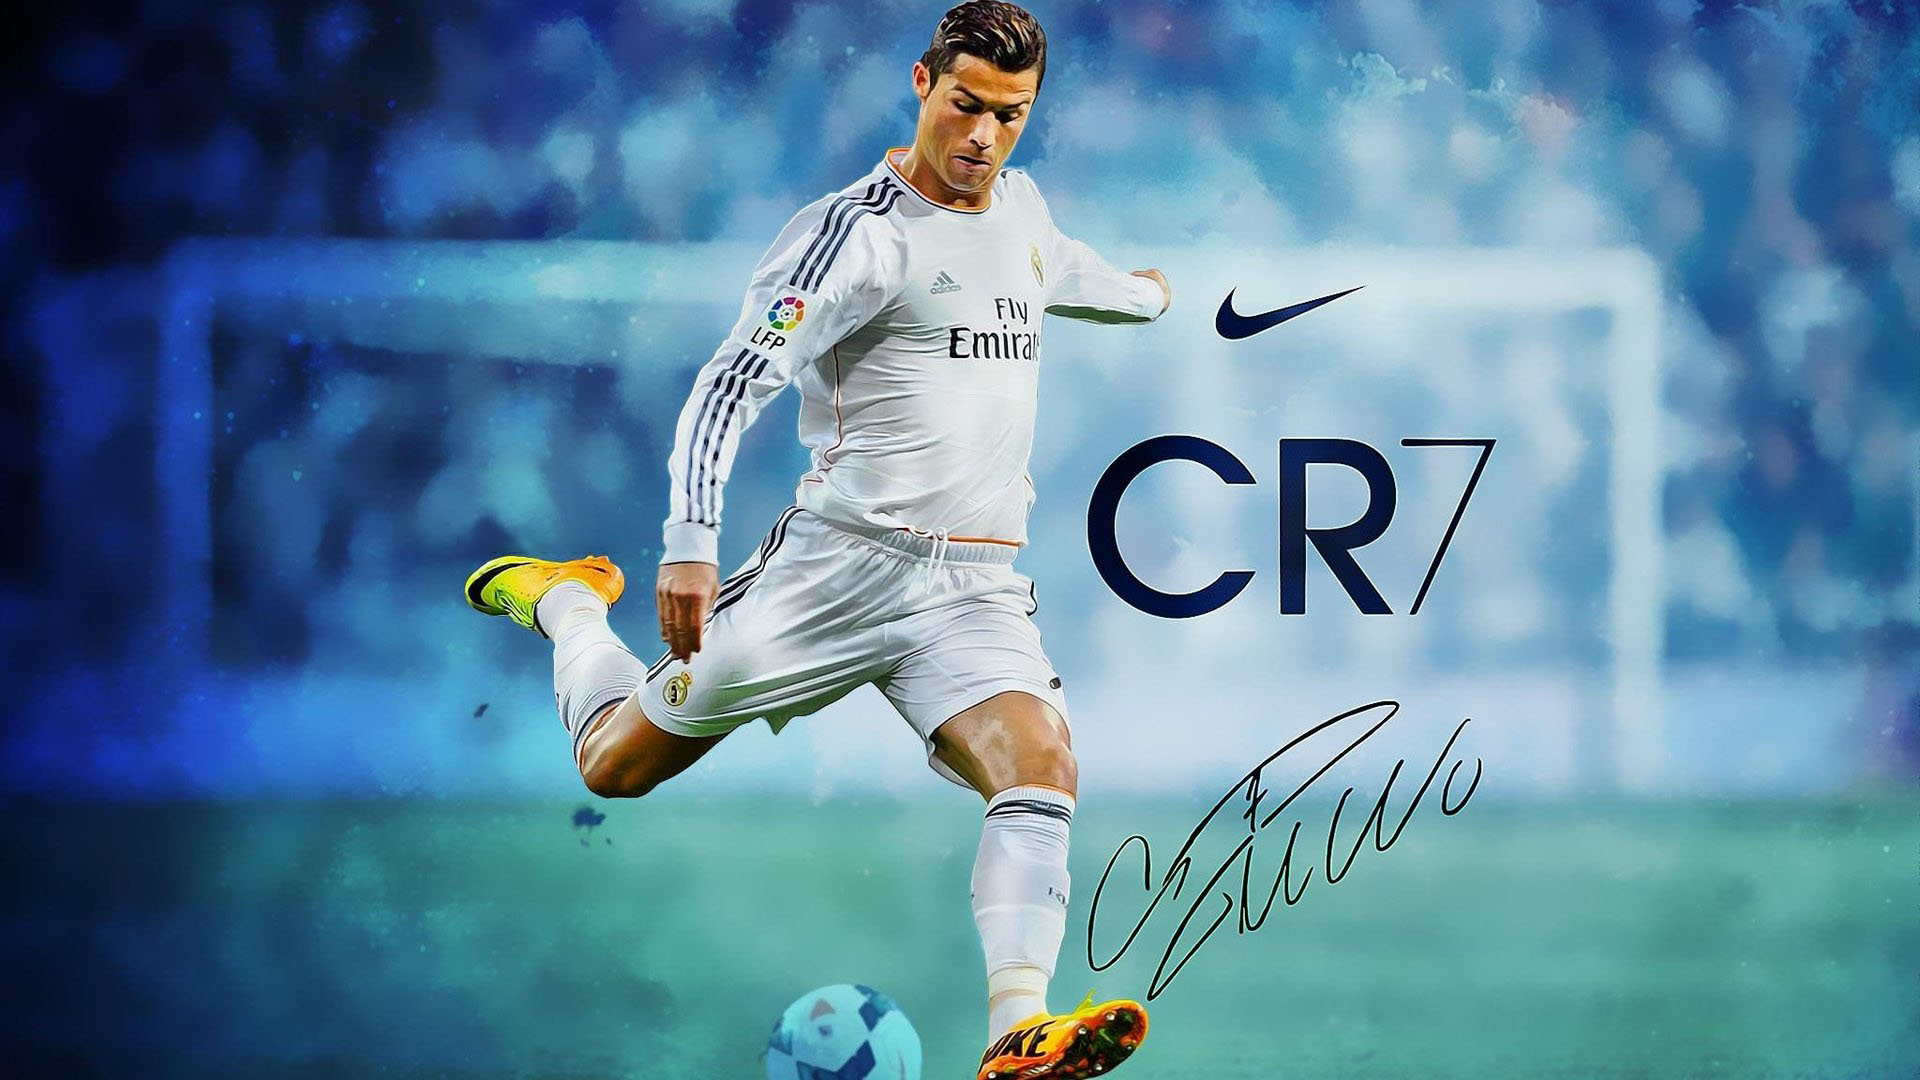 Biệt danh của Cristiano Ronaldo là CR7 và được rất nhiều người quan tâm. Tại đây, bạn sẽ được đắm mình trong thế giới của CR7 với những hình ảnh chất lượng cao về cuộc sống và sự nghiệp của anh, cùng cảm nhận được sức hút của những đường cong trên sân cỏ mỗi khi CR7 tung hoành.